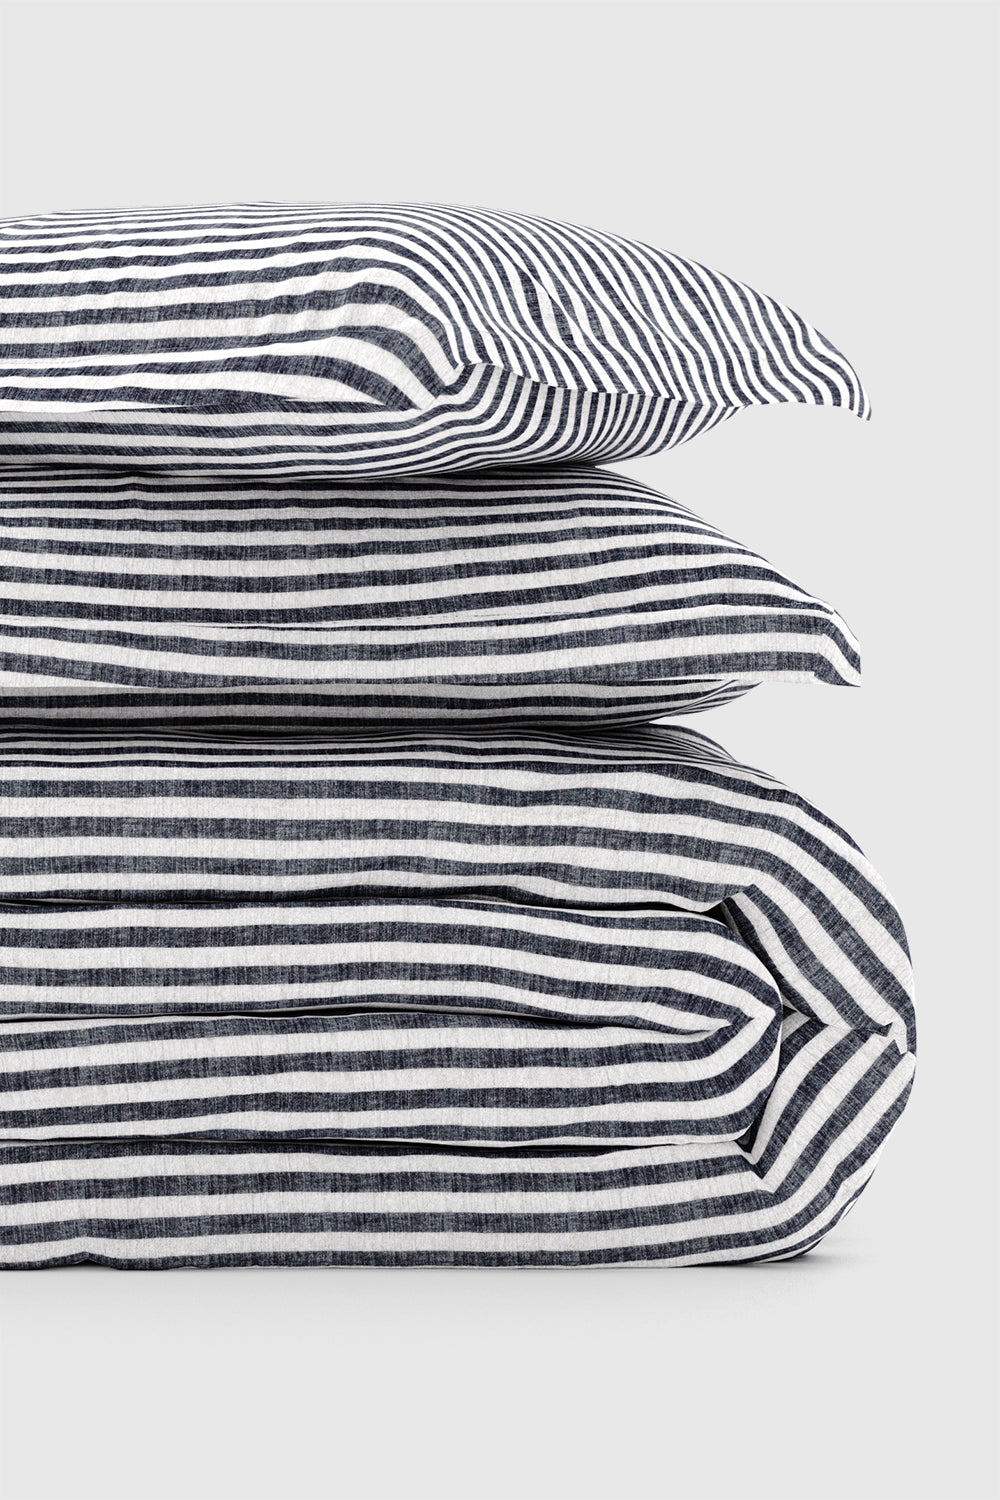 Yarn Dye Textured Stripe Duvet Cover Set